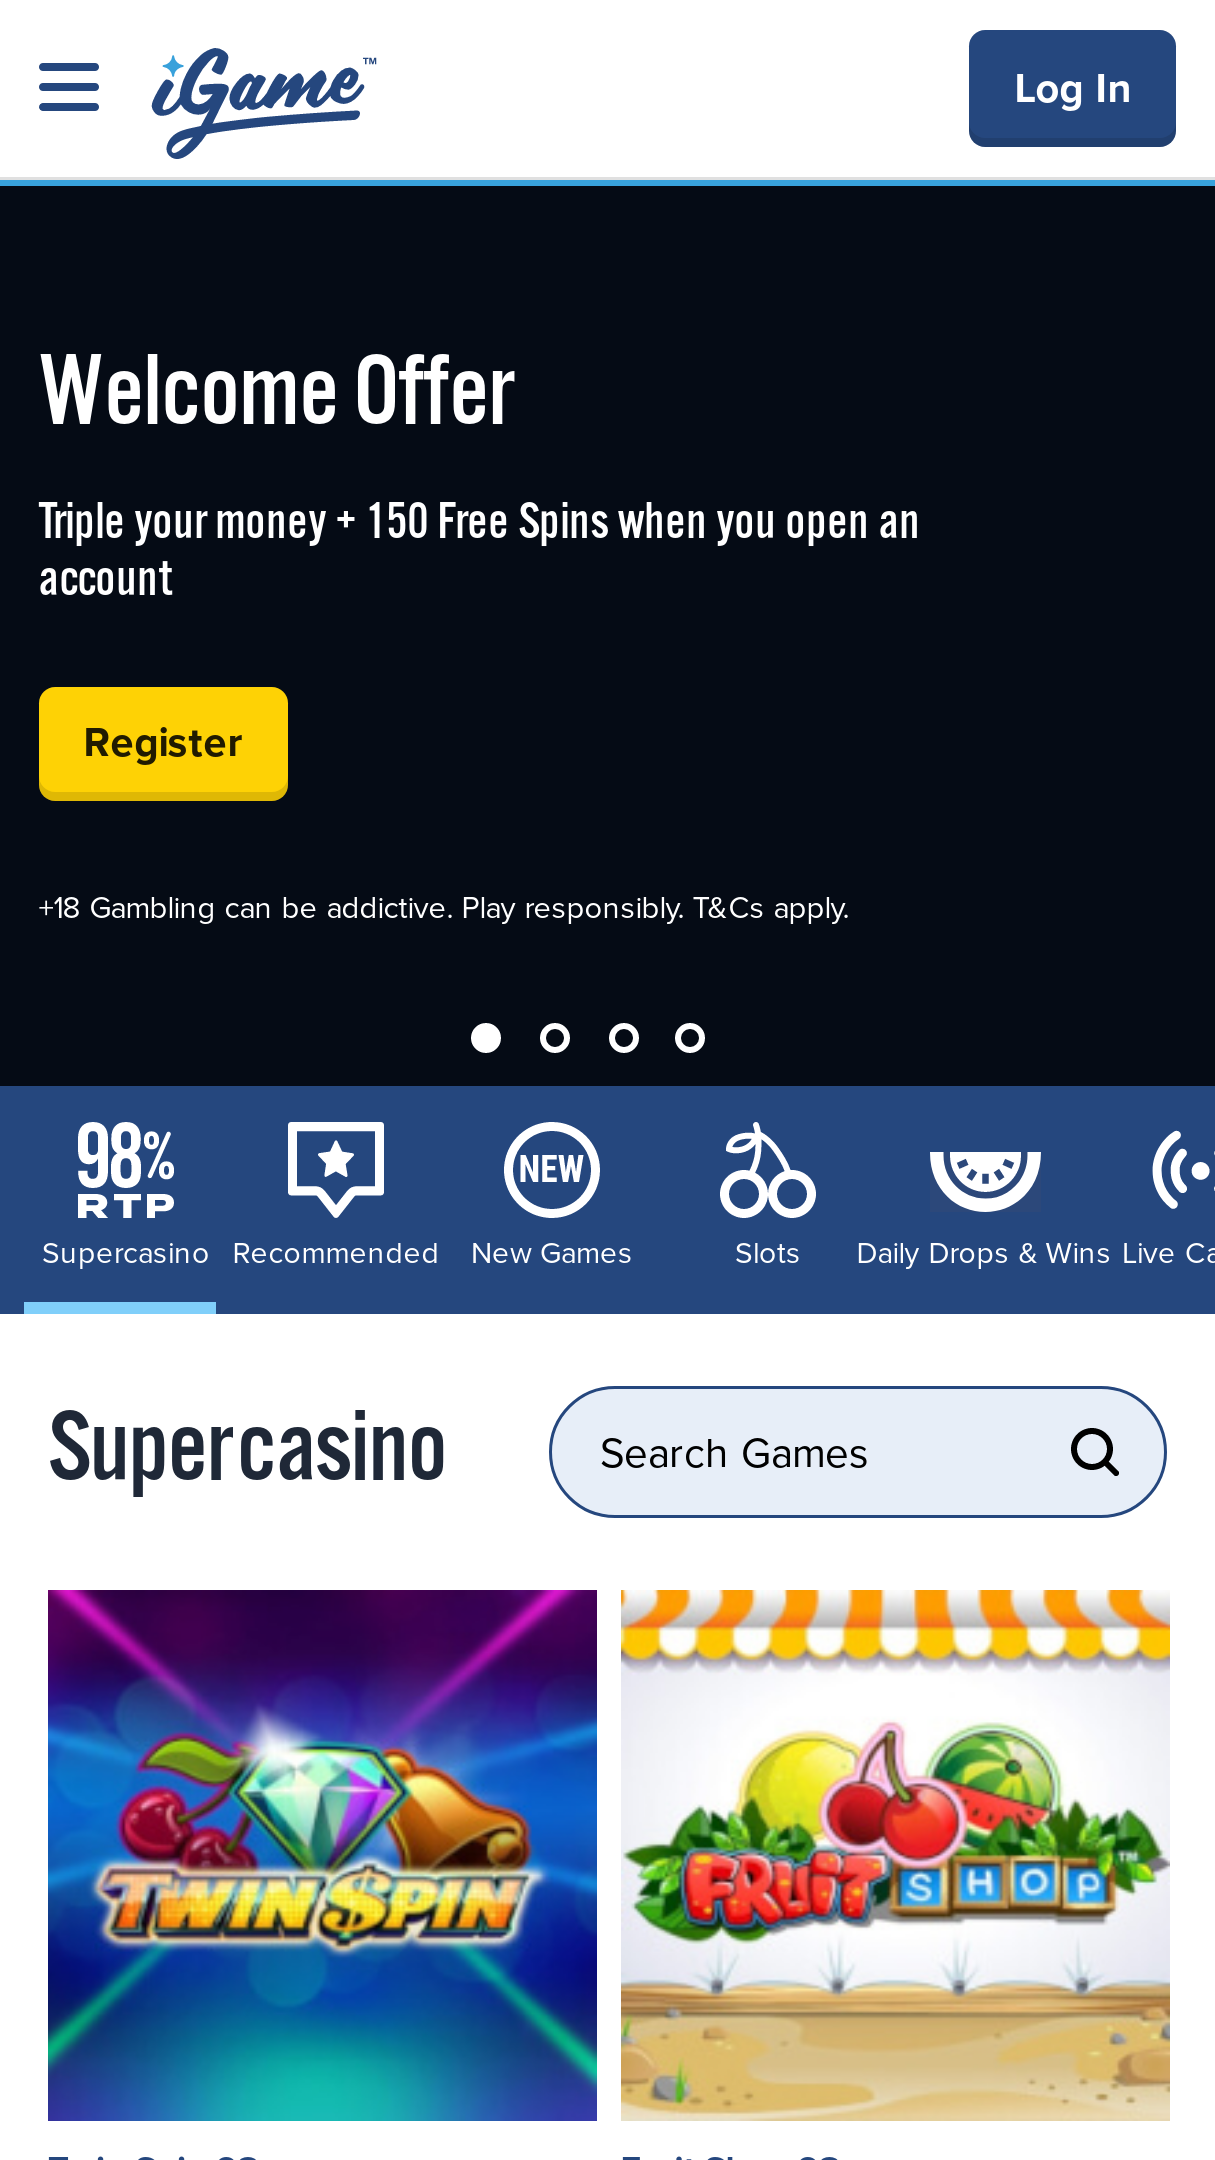 Casino Bonus Codes, igame.com bonus code.